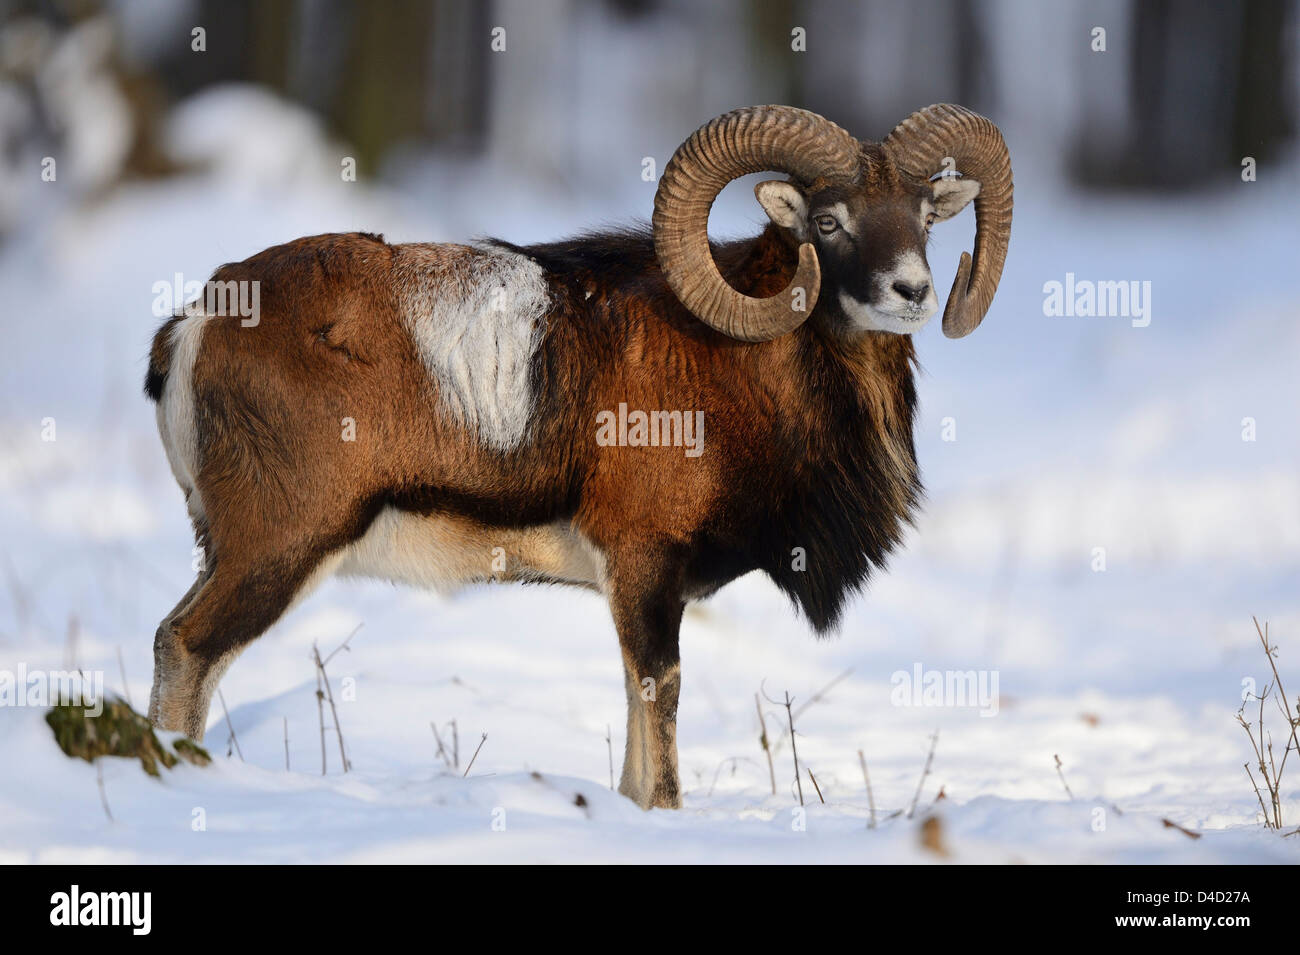 Mouflon européen, Ovis orientalis musimon, dans la neige, Bavaria, Germany, Europe Banque D'Images